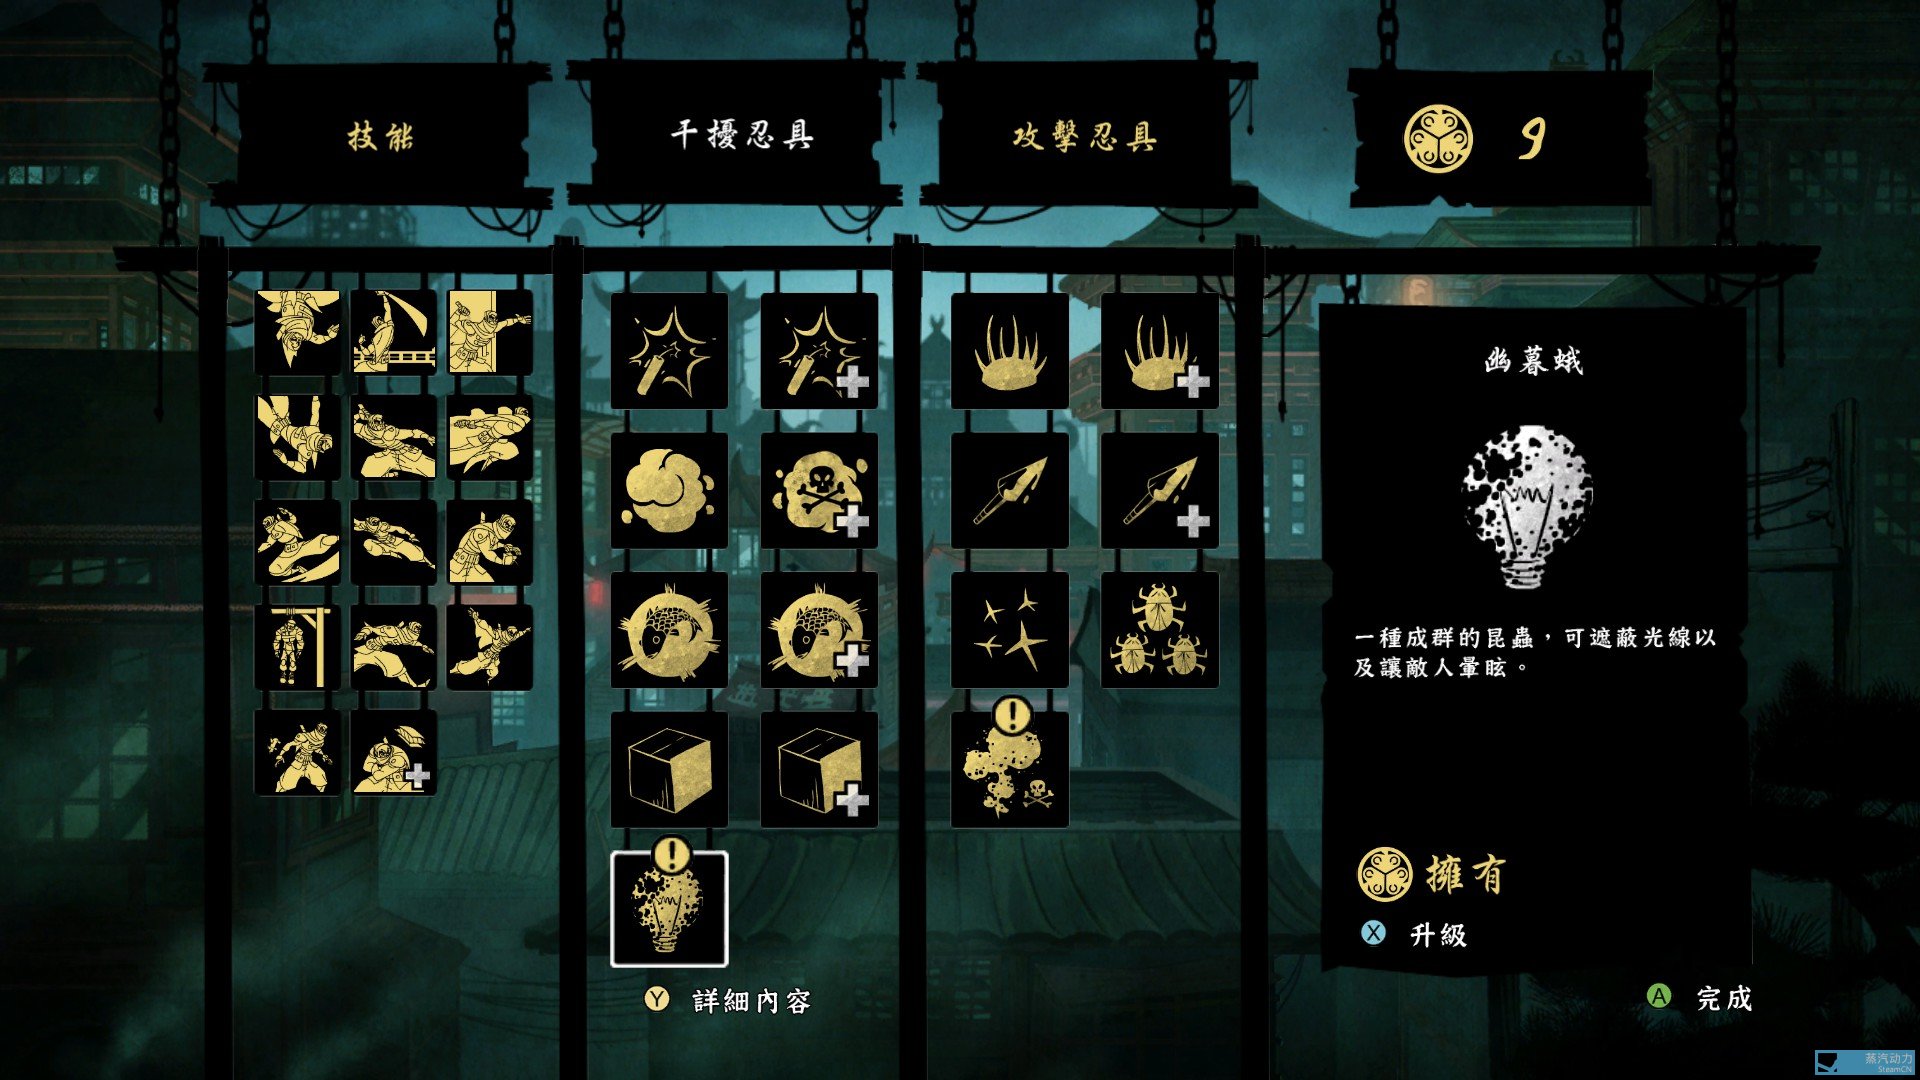 忍者印记特别版 Mark Of The Ninja Special Edition 全成就指南 成就指南 其乐keylol 驱动正版游戏的引擎